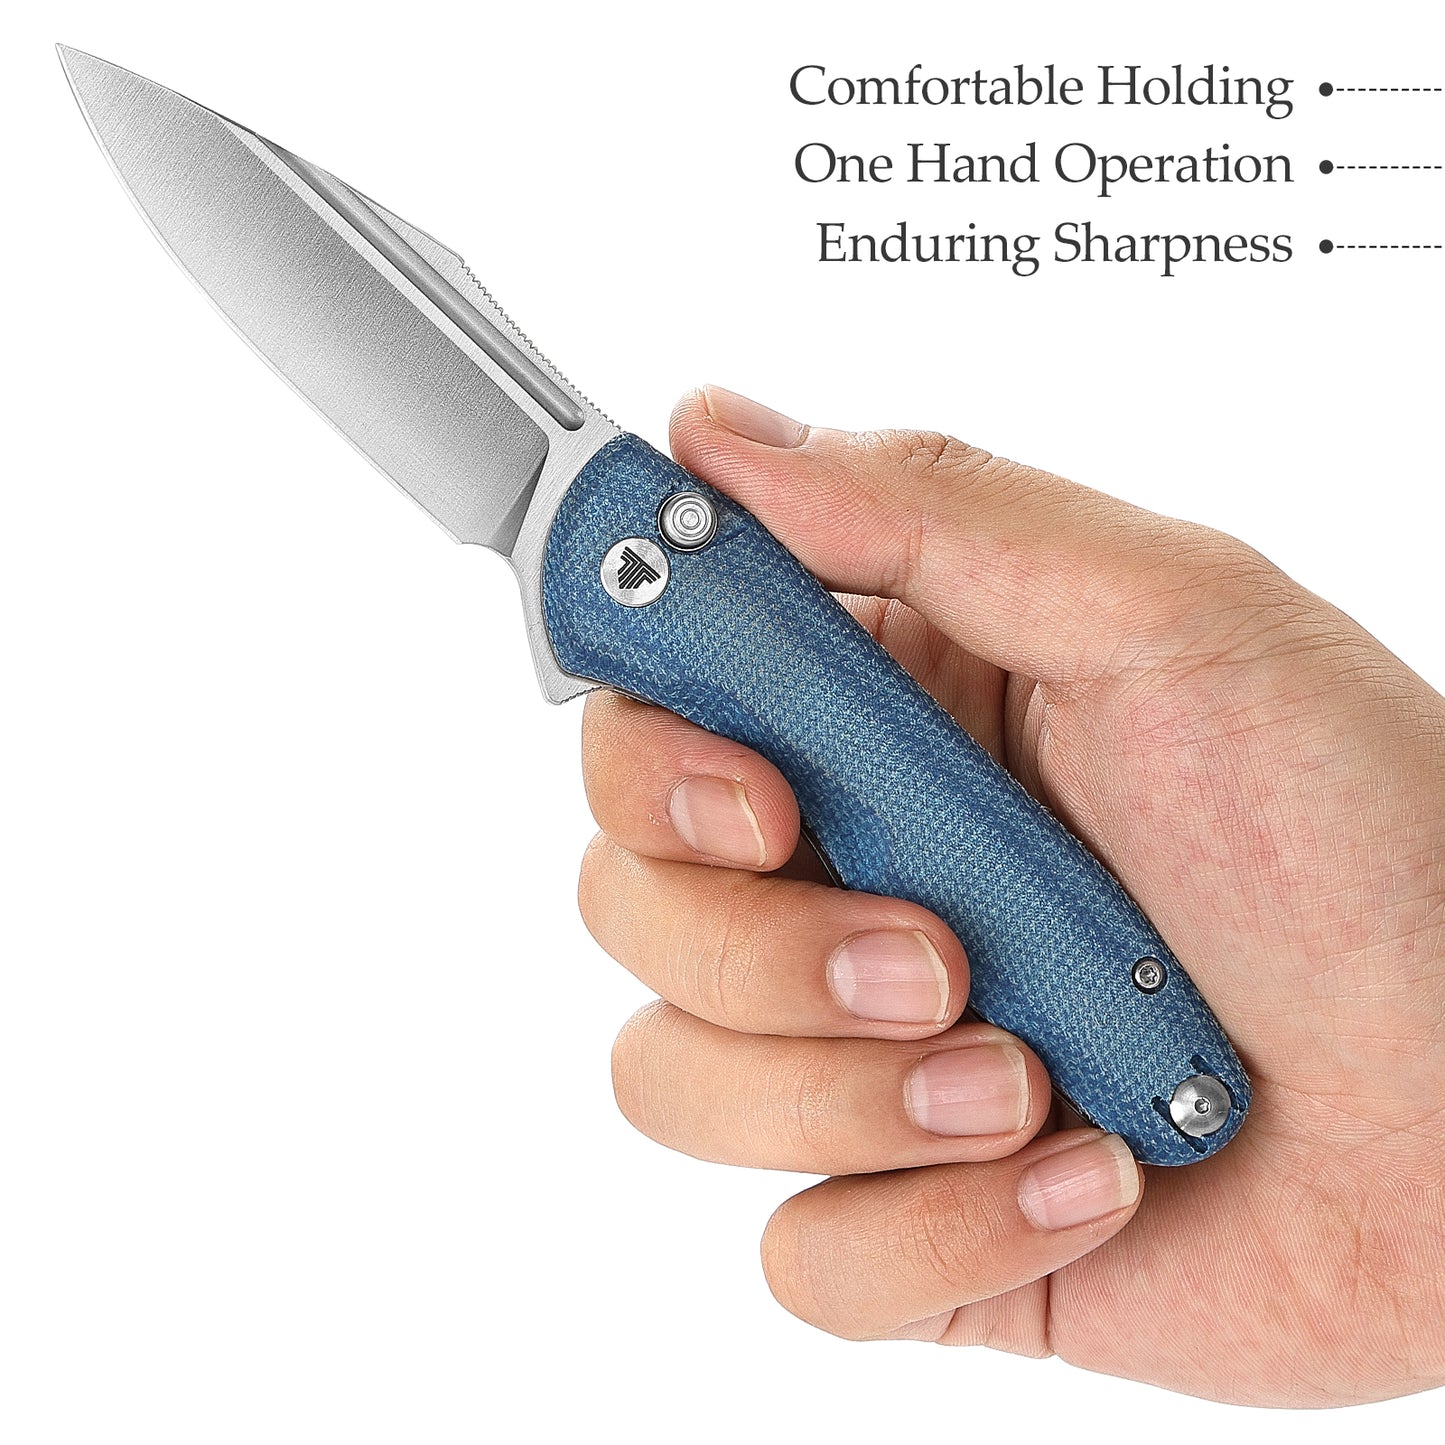 Antliae-04LMW Button Lock Folding Pocket Knife,3.26" 14C28N Steel,Micarta Handle